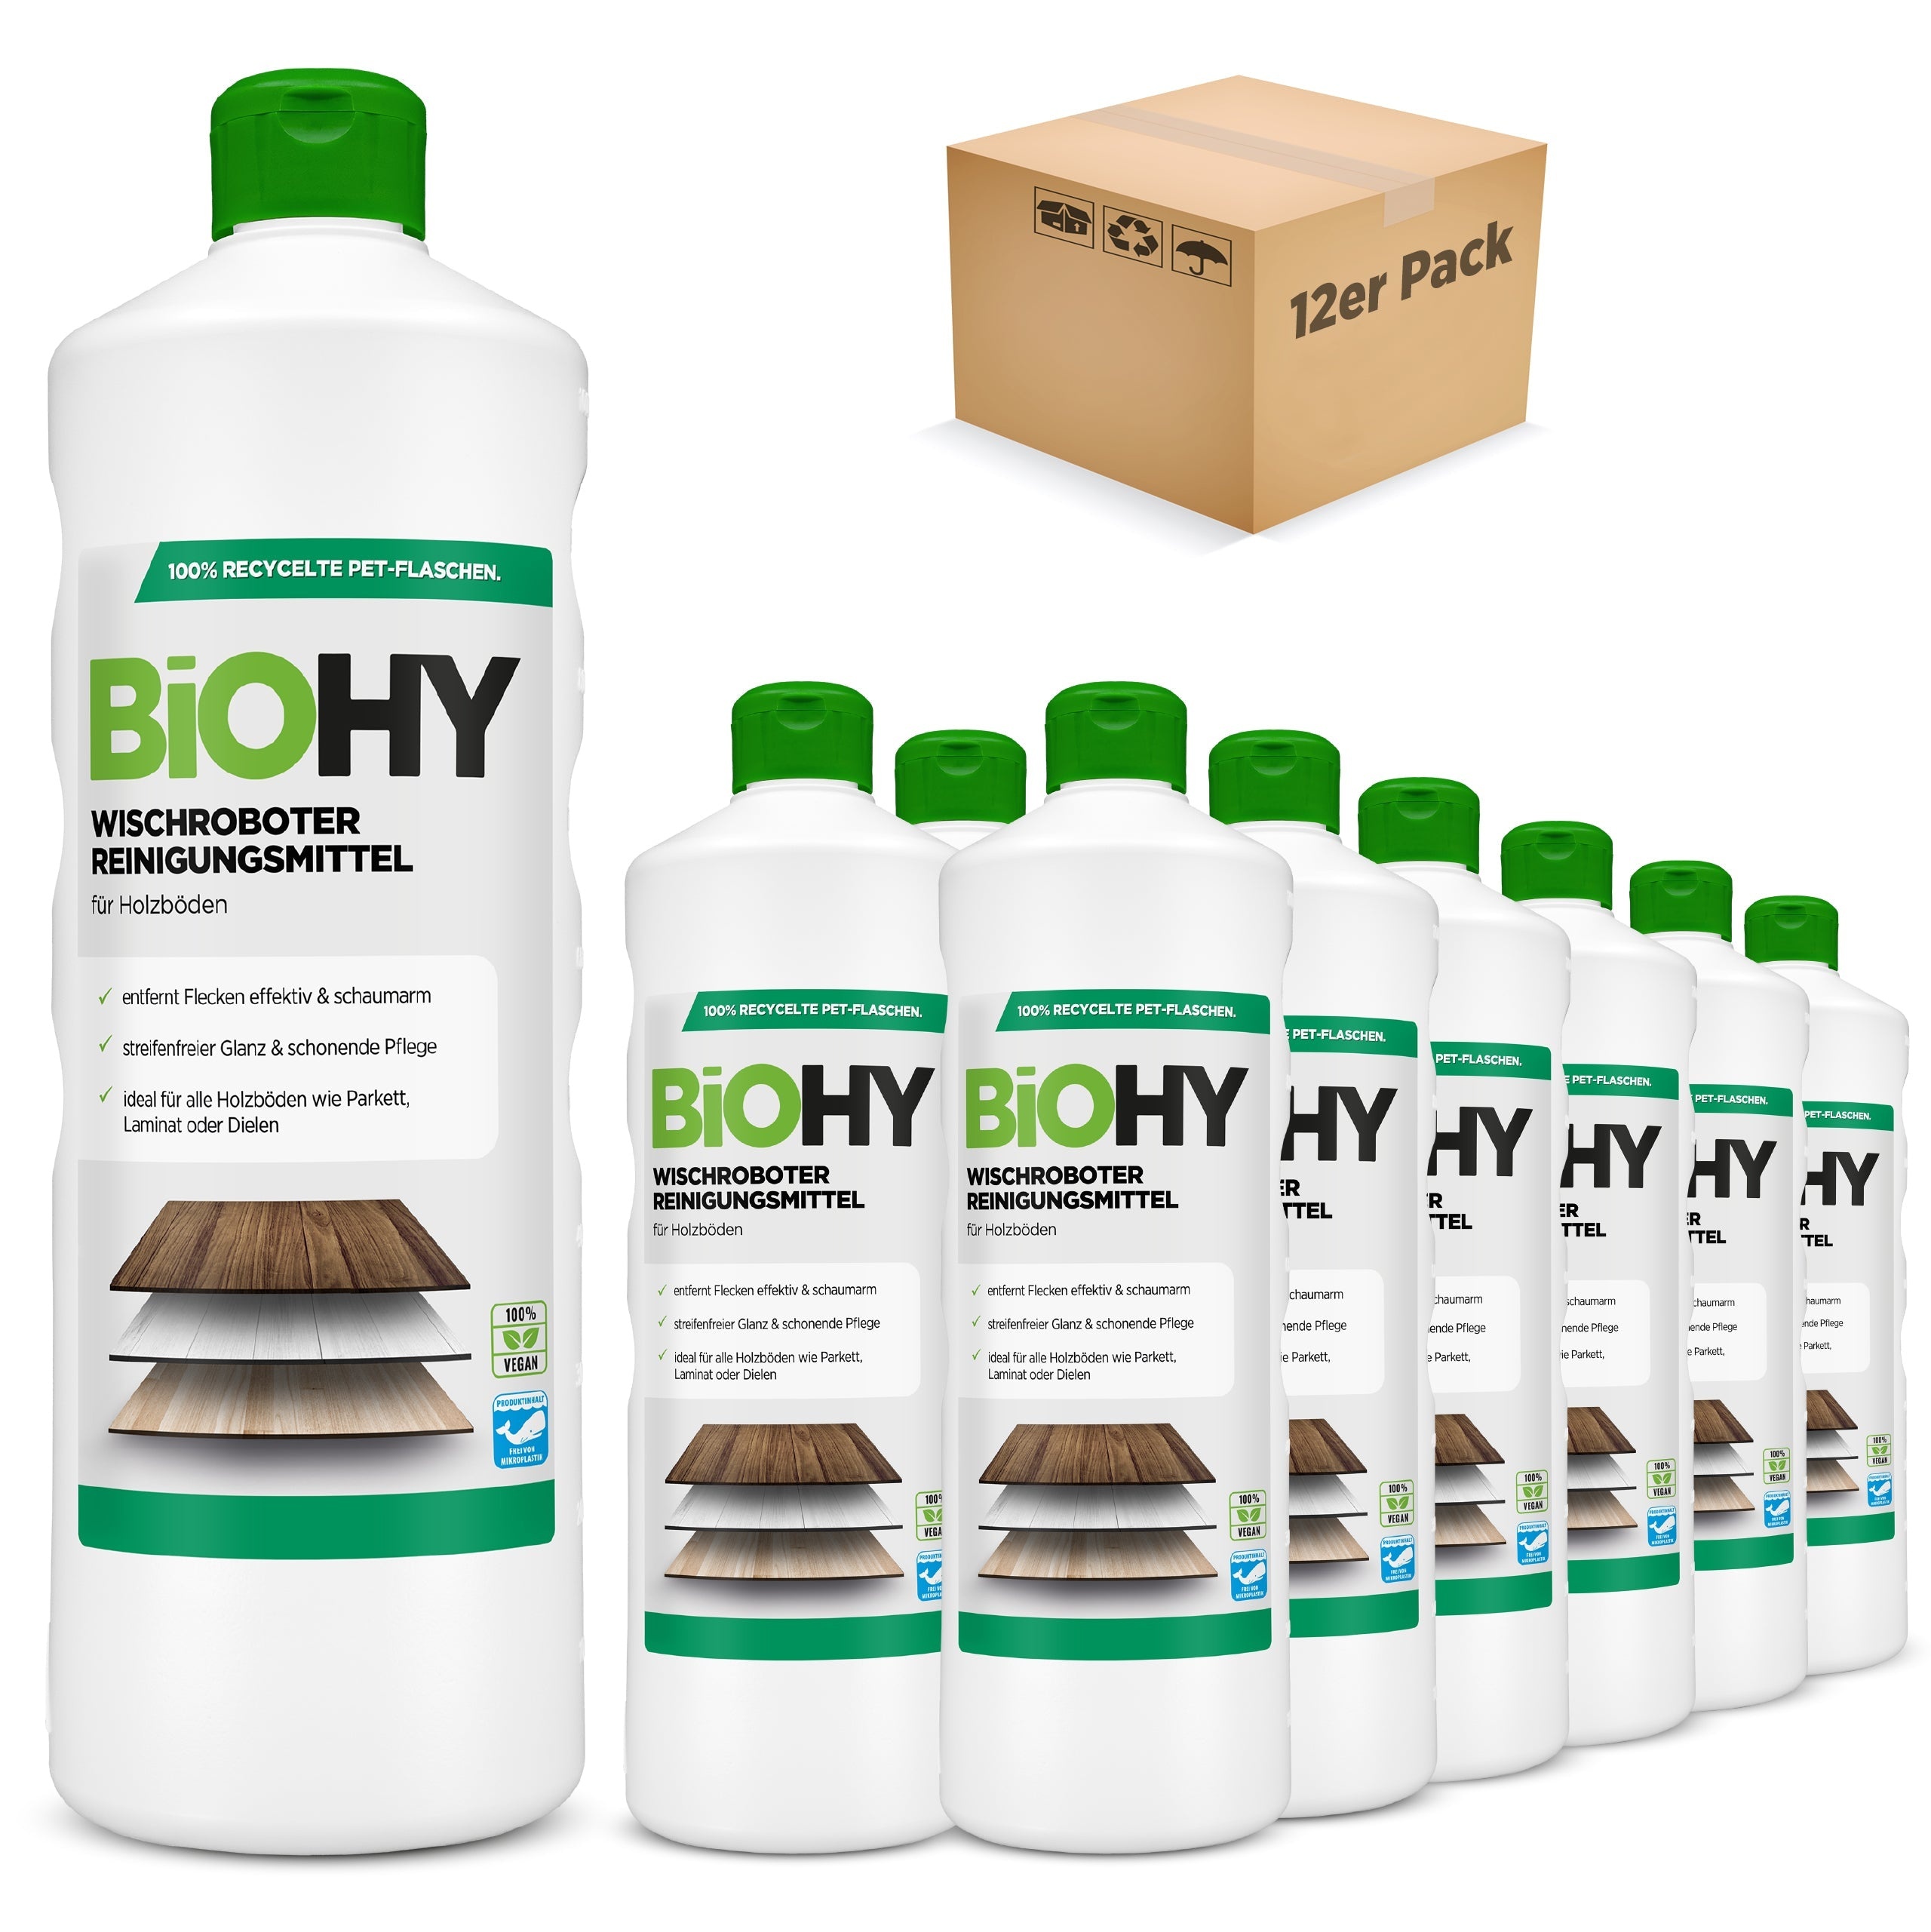 BiOHY Wischroboter Reinigungsmittel für Holzböden, Reiniger für Wischroboter, Nicht schmäumender Bodenreiniger, Bio-Konzentrat 12er Pack (12 x 1 Liter Flasche)